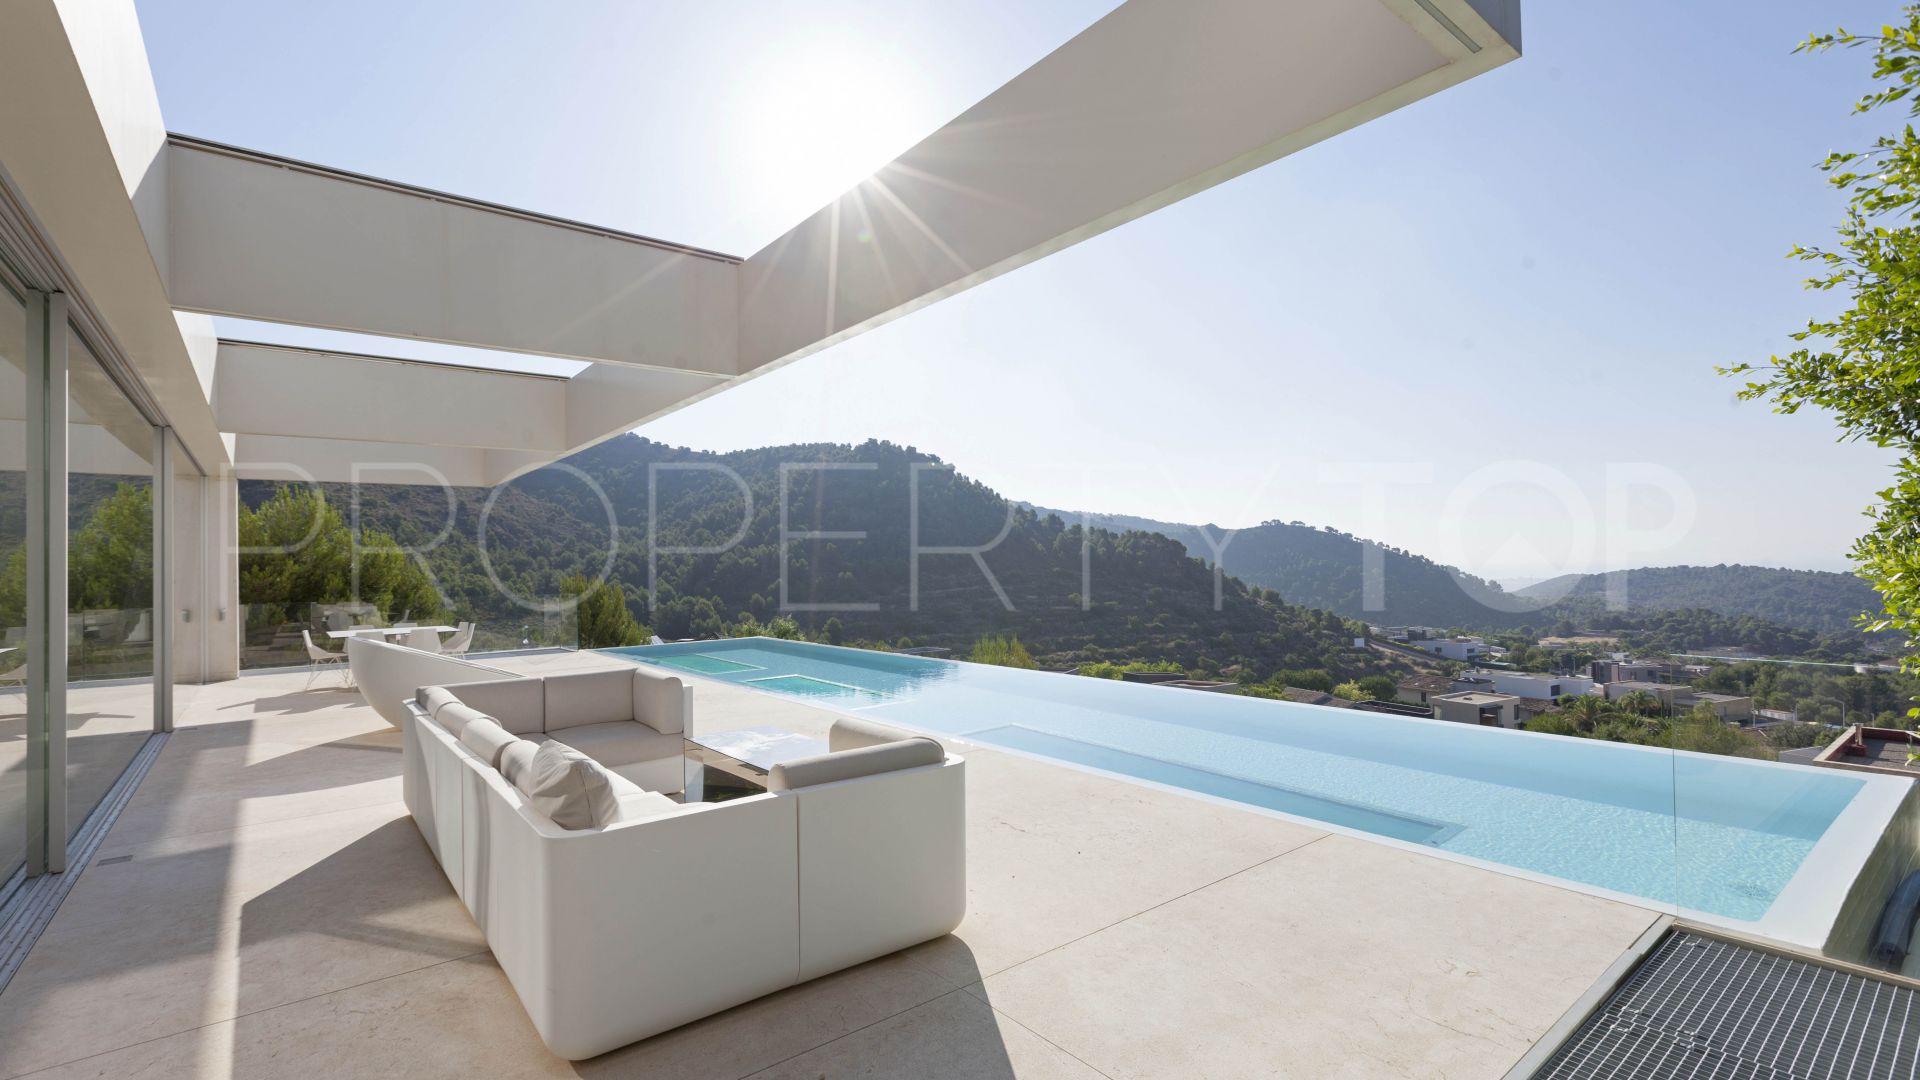 6 bedrooms villa in Los Monasterios for sale